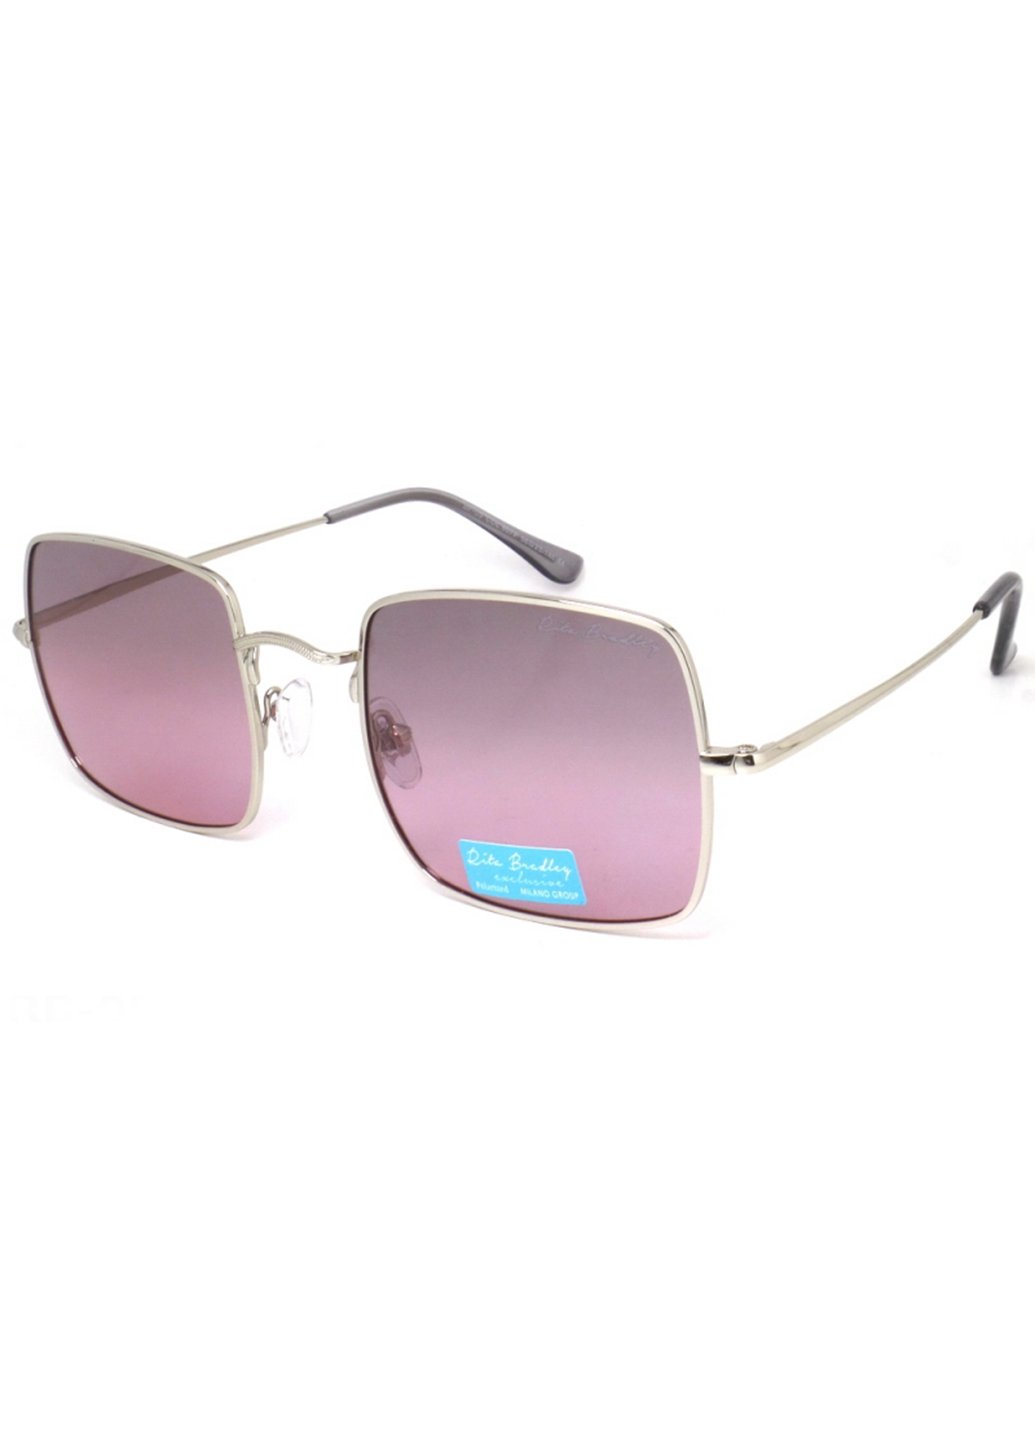 Купить Женские солнцезащитные очки Rita Bradley с поляризацией RB-05 112006 в интернет-магазине